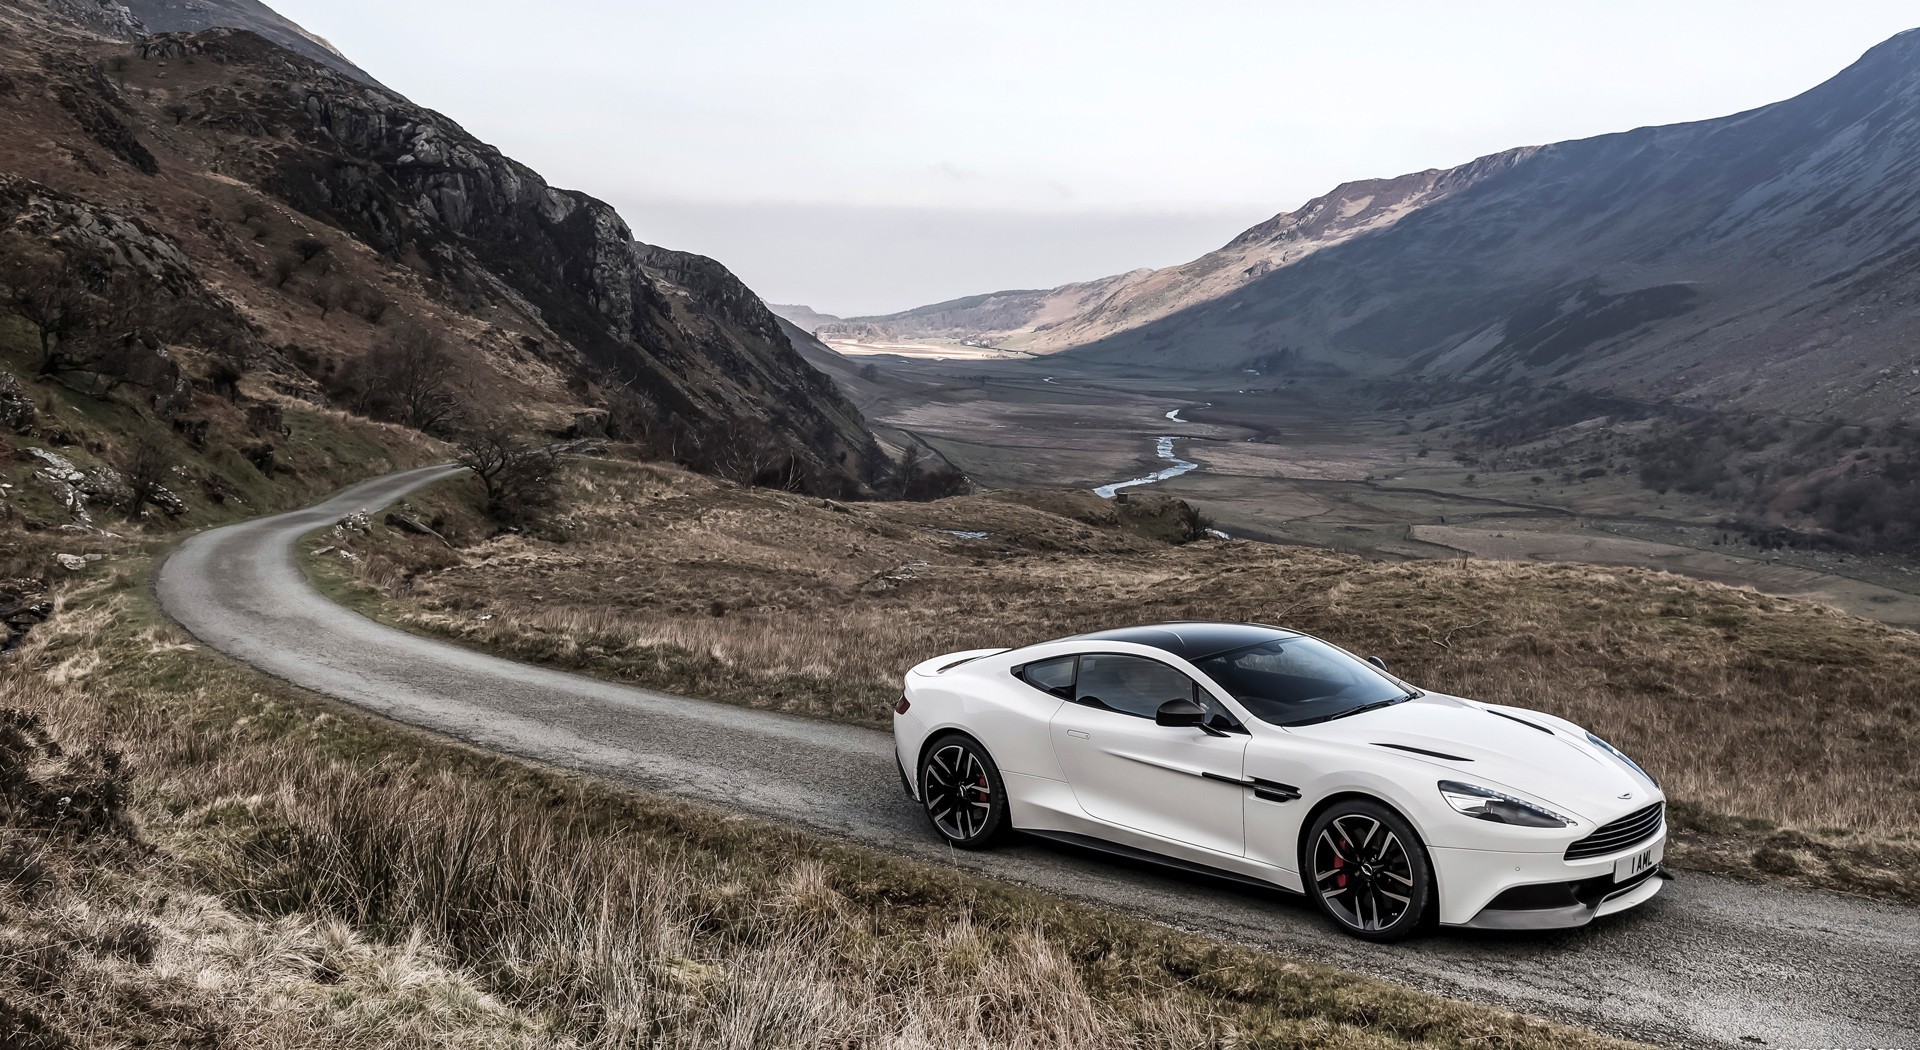 Aston Martin Vanquish White image